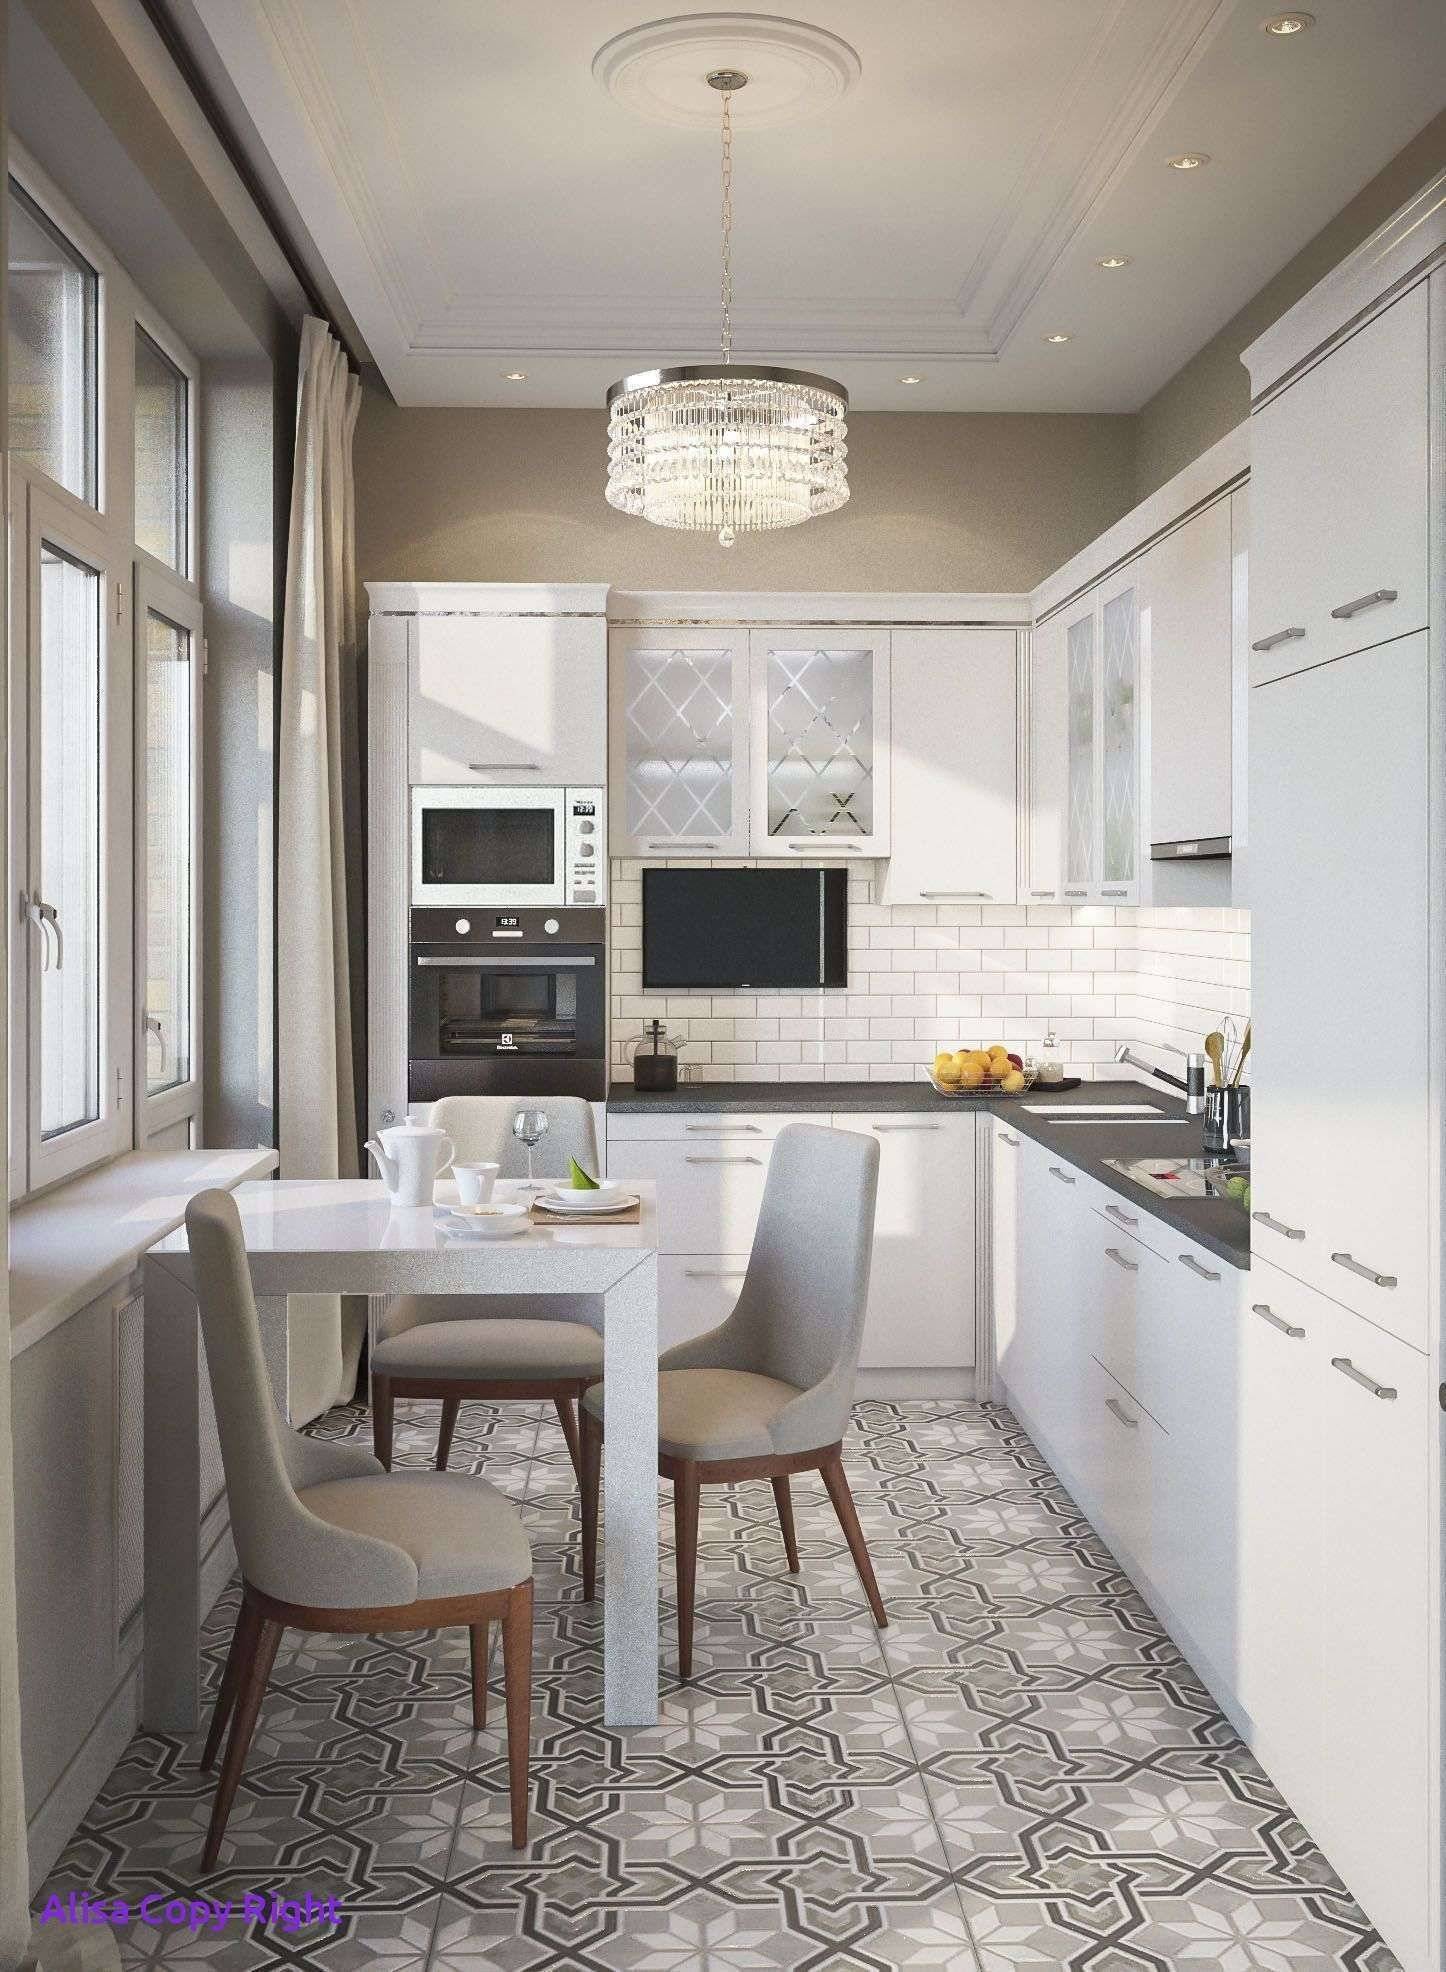 Кухня в квартире девятиэтажного панельного дома — особенности планировки